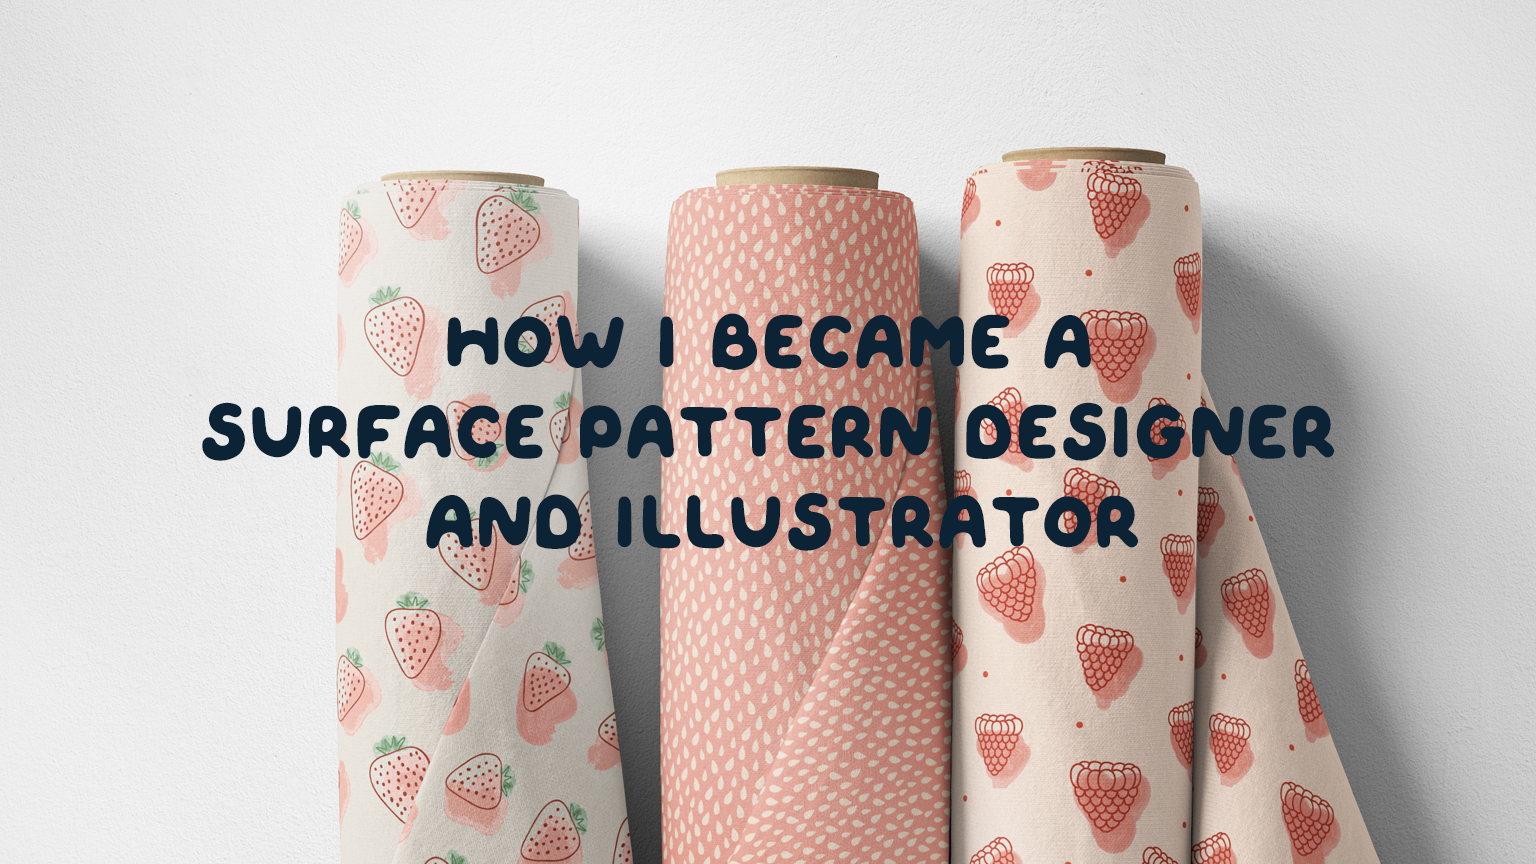 How I became a surface pattern designer and illustrator